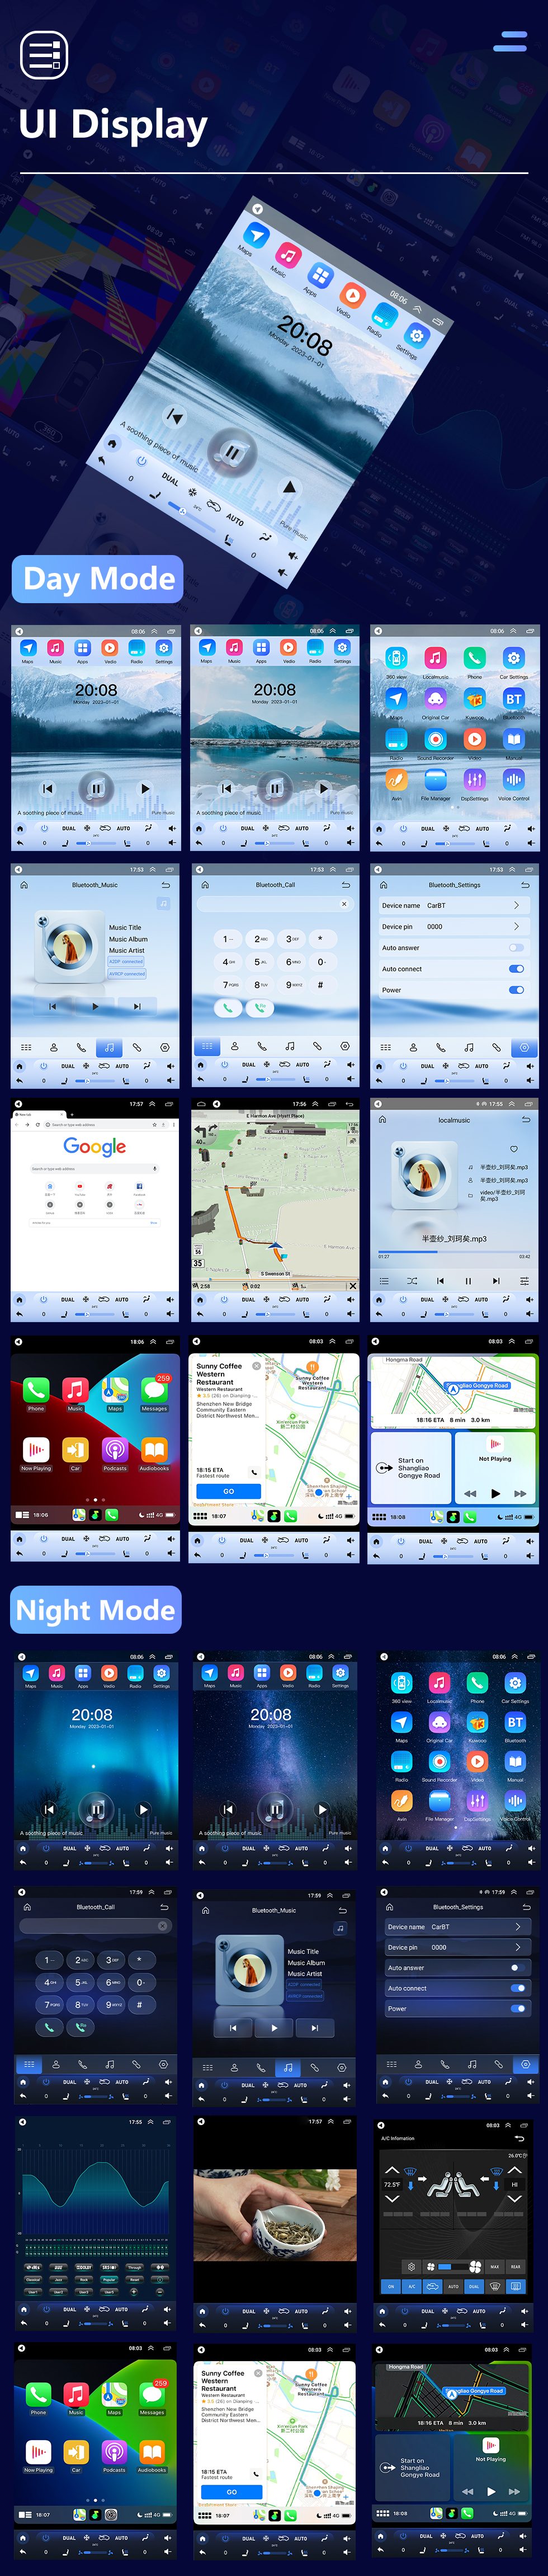 Seicane HD Touchscreen para 2010-2013 HAIMA 7 Rádio Android 10.0 9,7 polegadas Navegação GPS Suporte Bluetooth Câmera 360° TV Digital TPMS